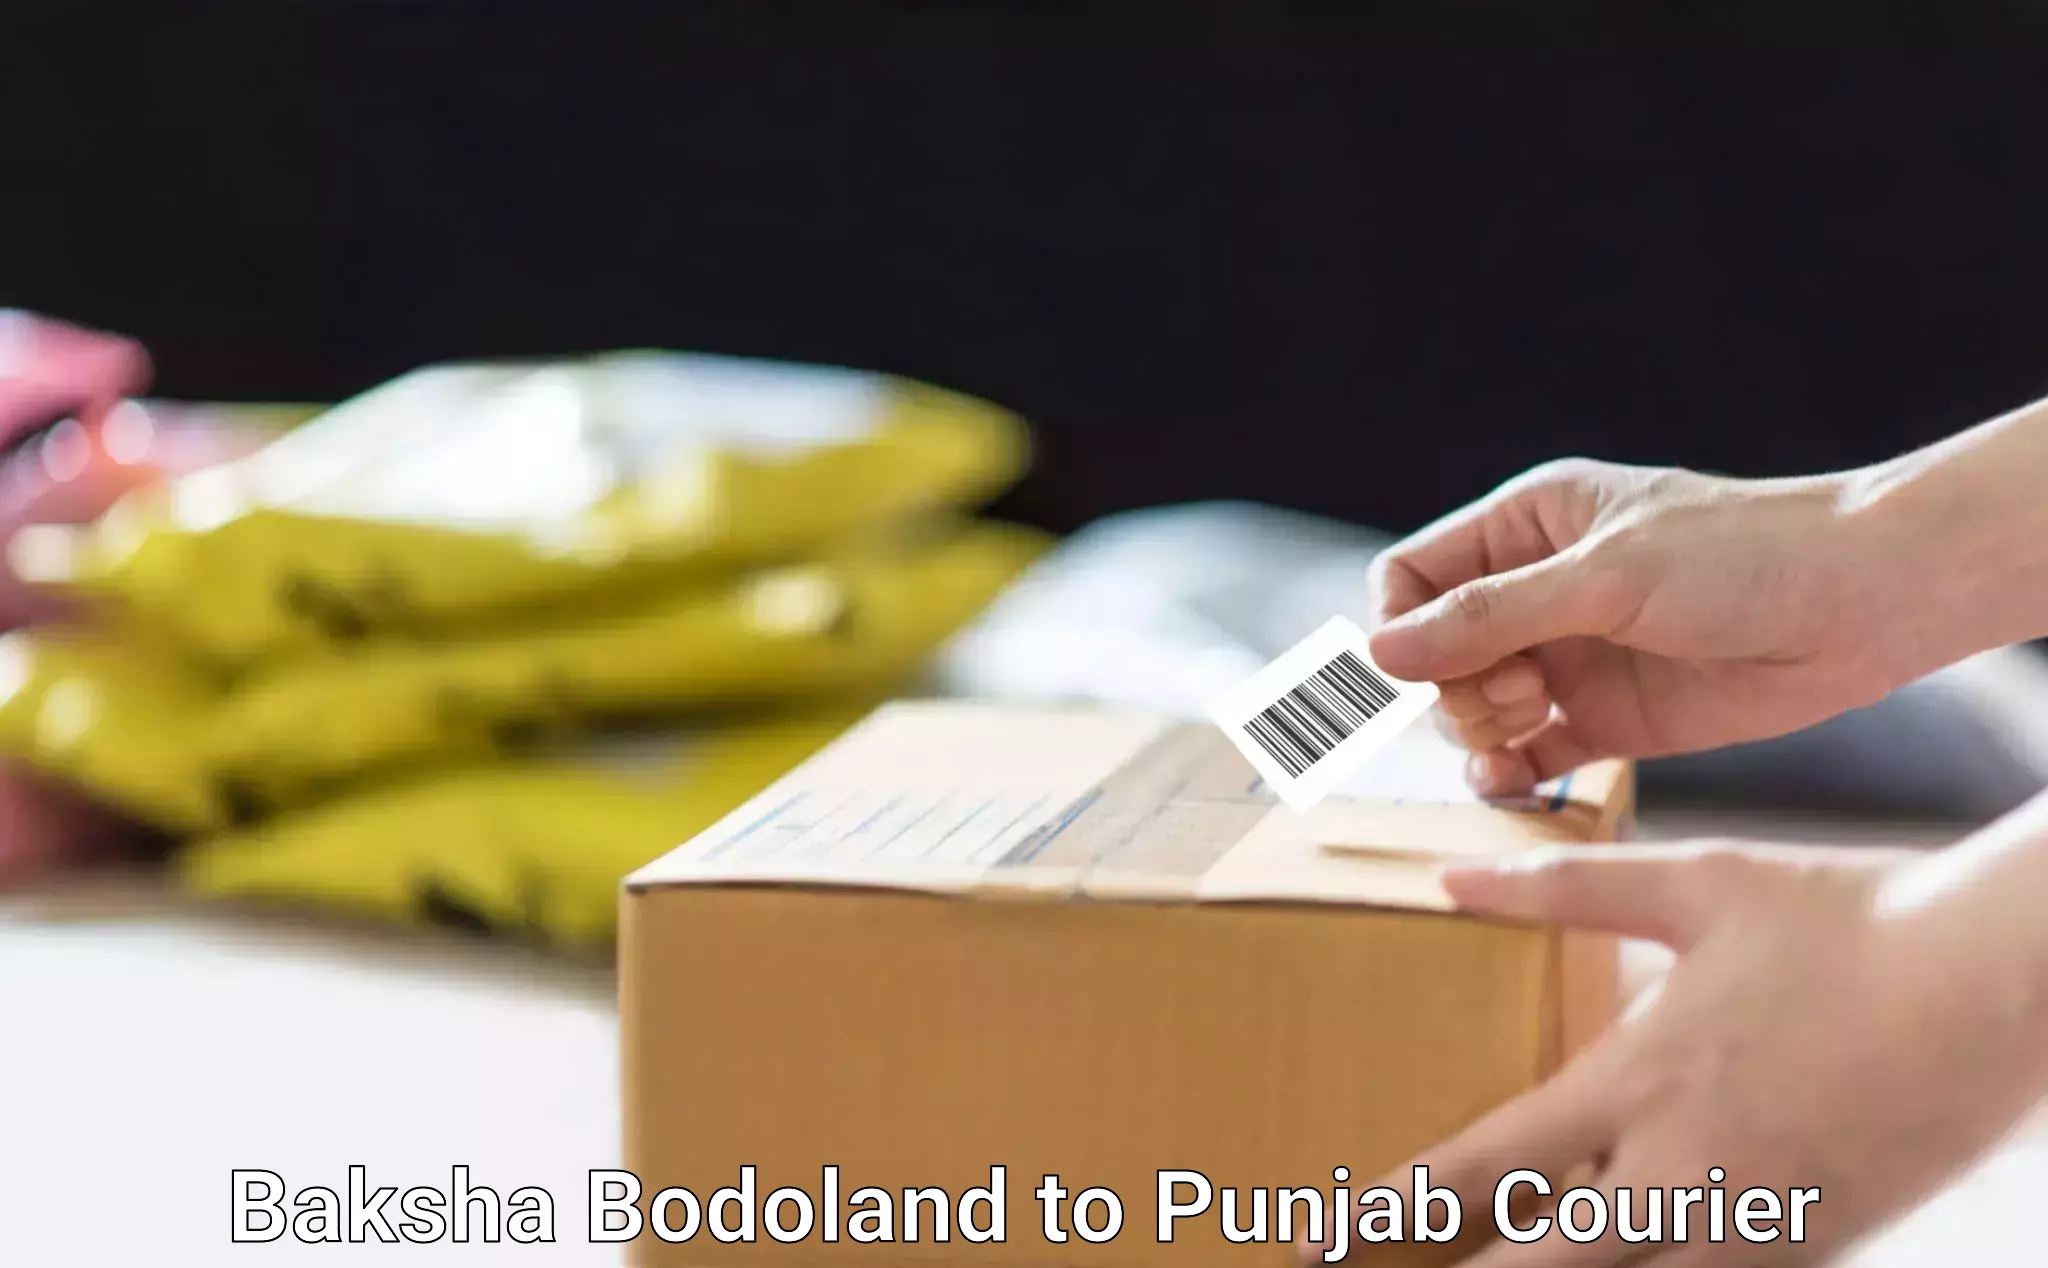 Reliable courier service Baksha Bodoland to Punjab